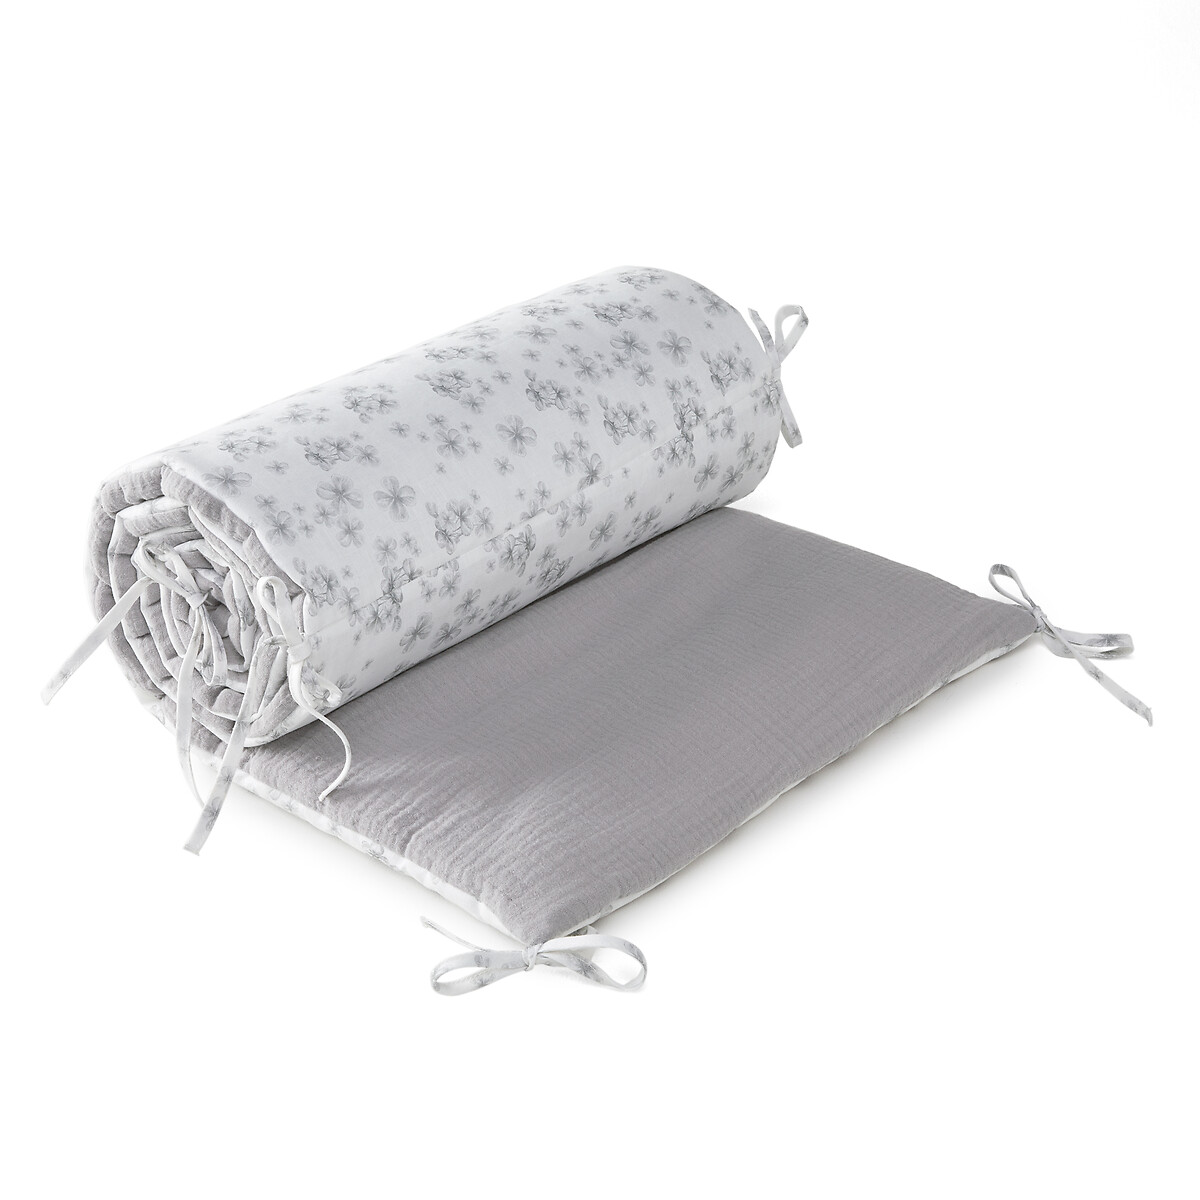 Бампер Для детской кроватки из льна и хлопчатобумажной газовой ткани Loopy 40 x 184 см серый